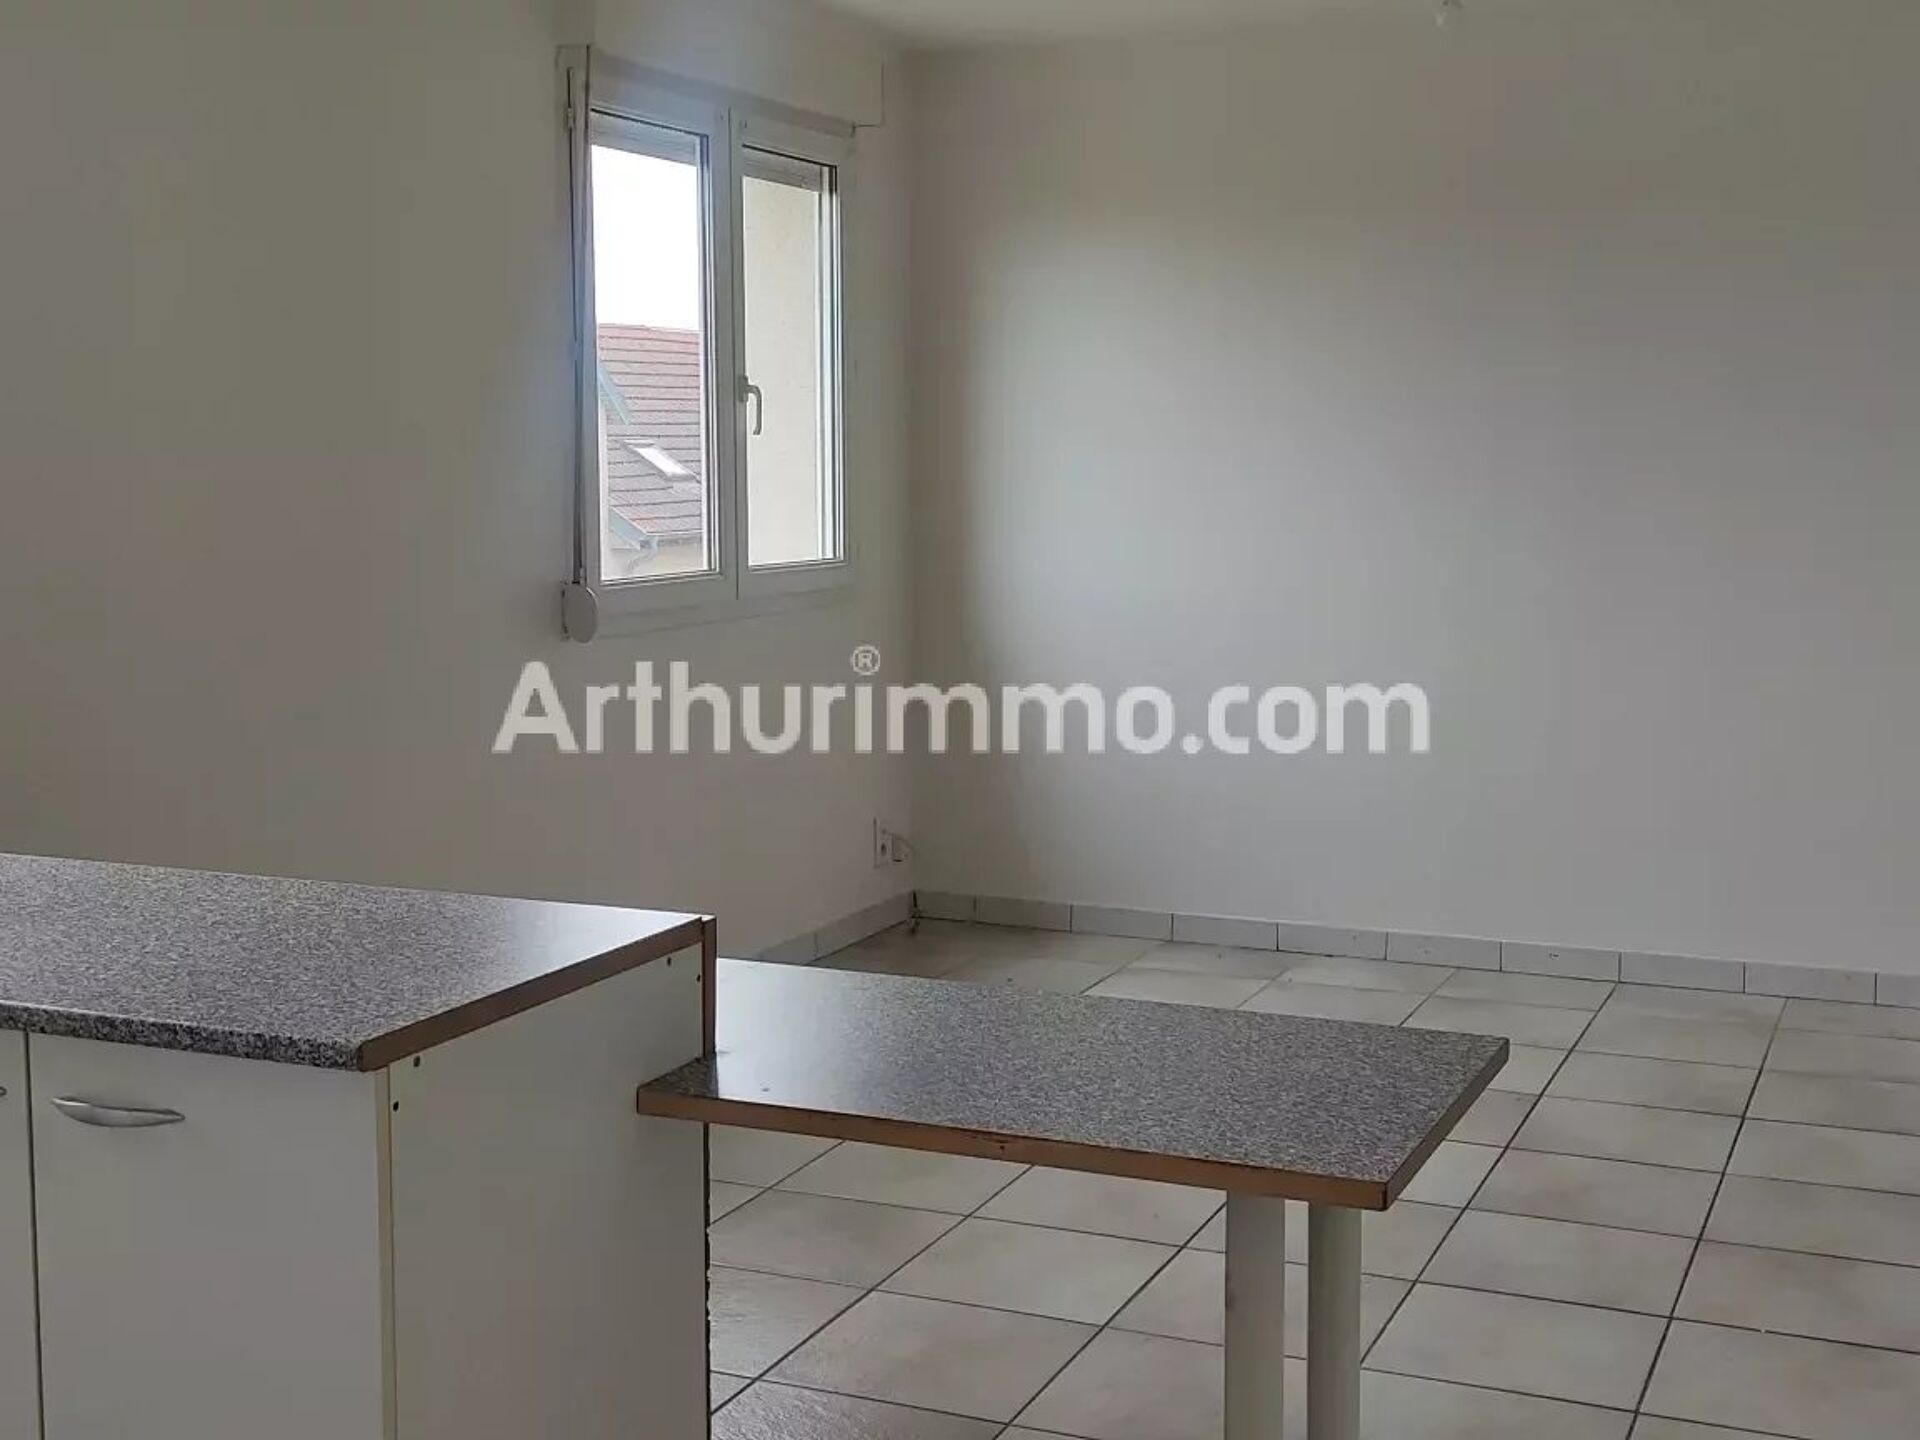 Vente Appartement 55m² à Franois (25770) - Arthurimmo